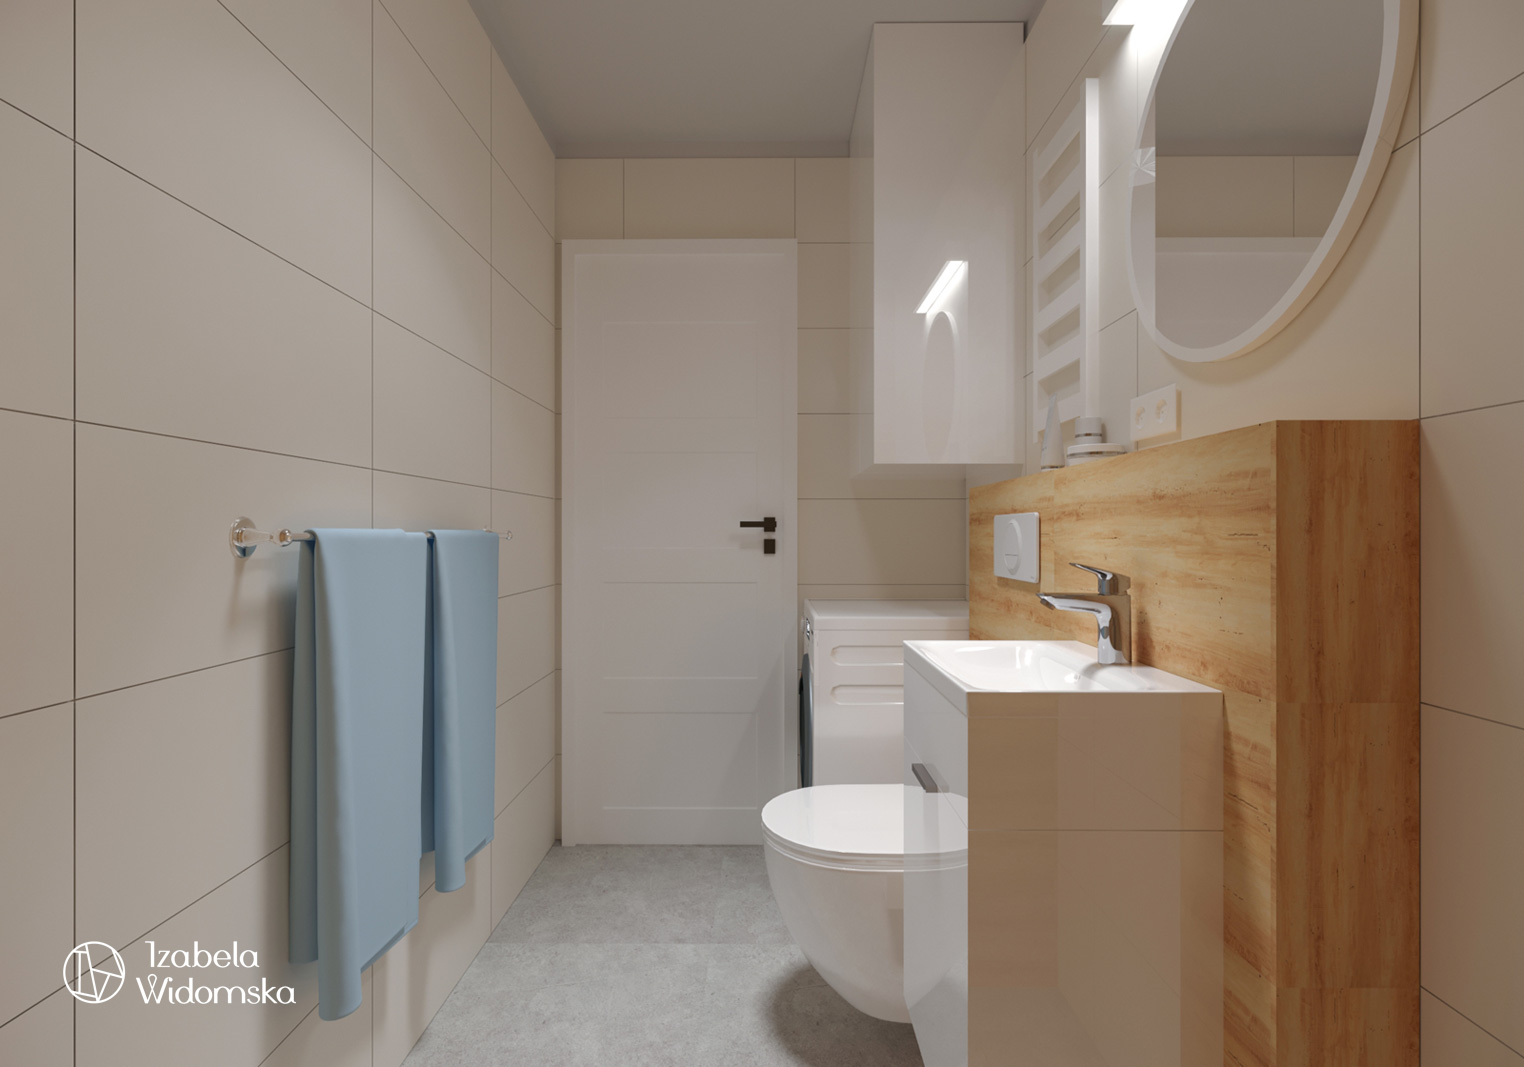 Małe mieszkanie z błękitną wyspą | Komfort Dopasowanie | Projekt wnętrza architekt Izabela Widomska